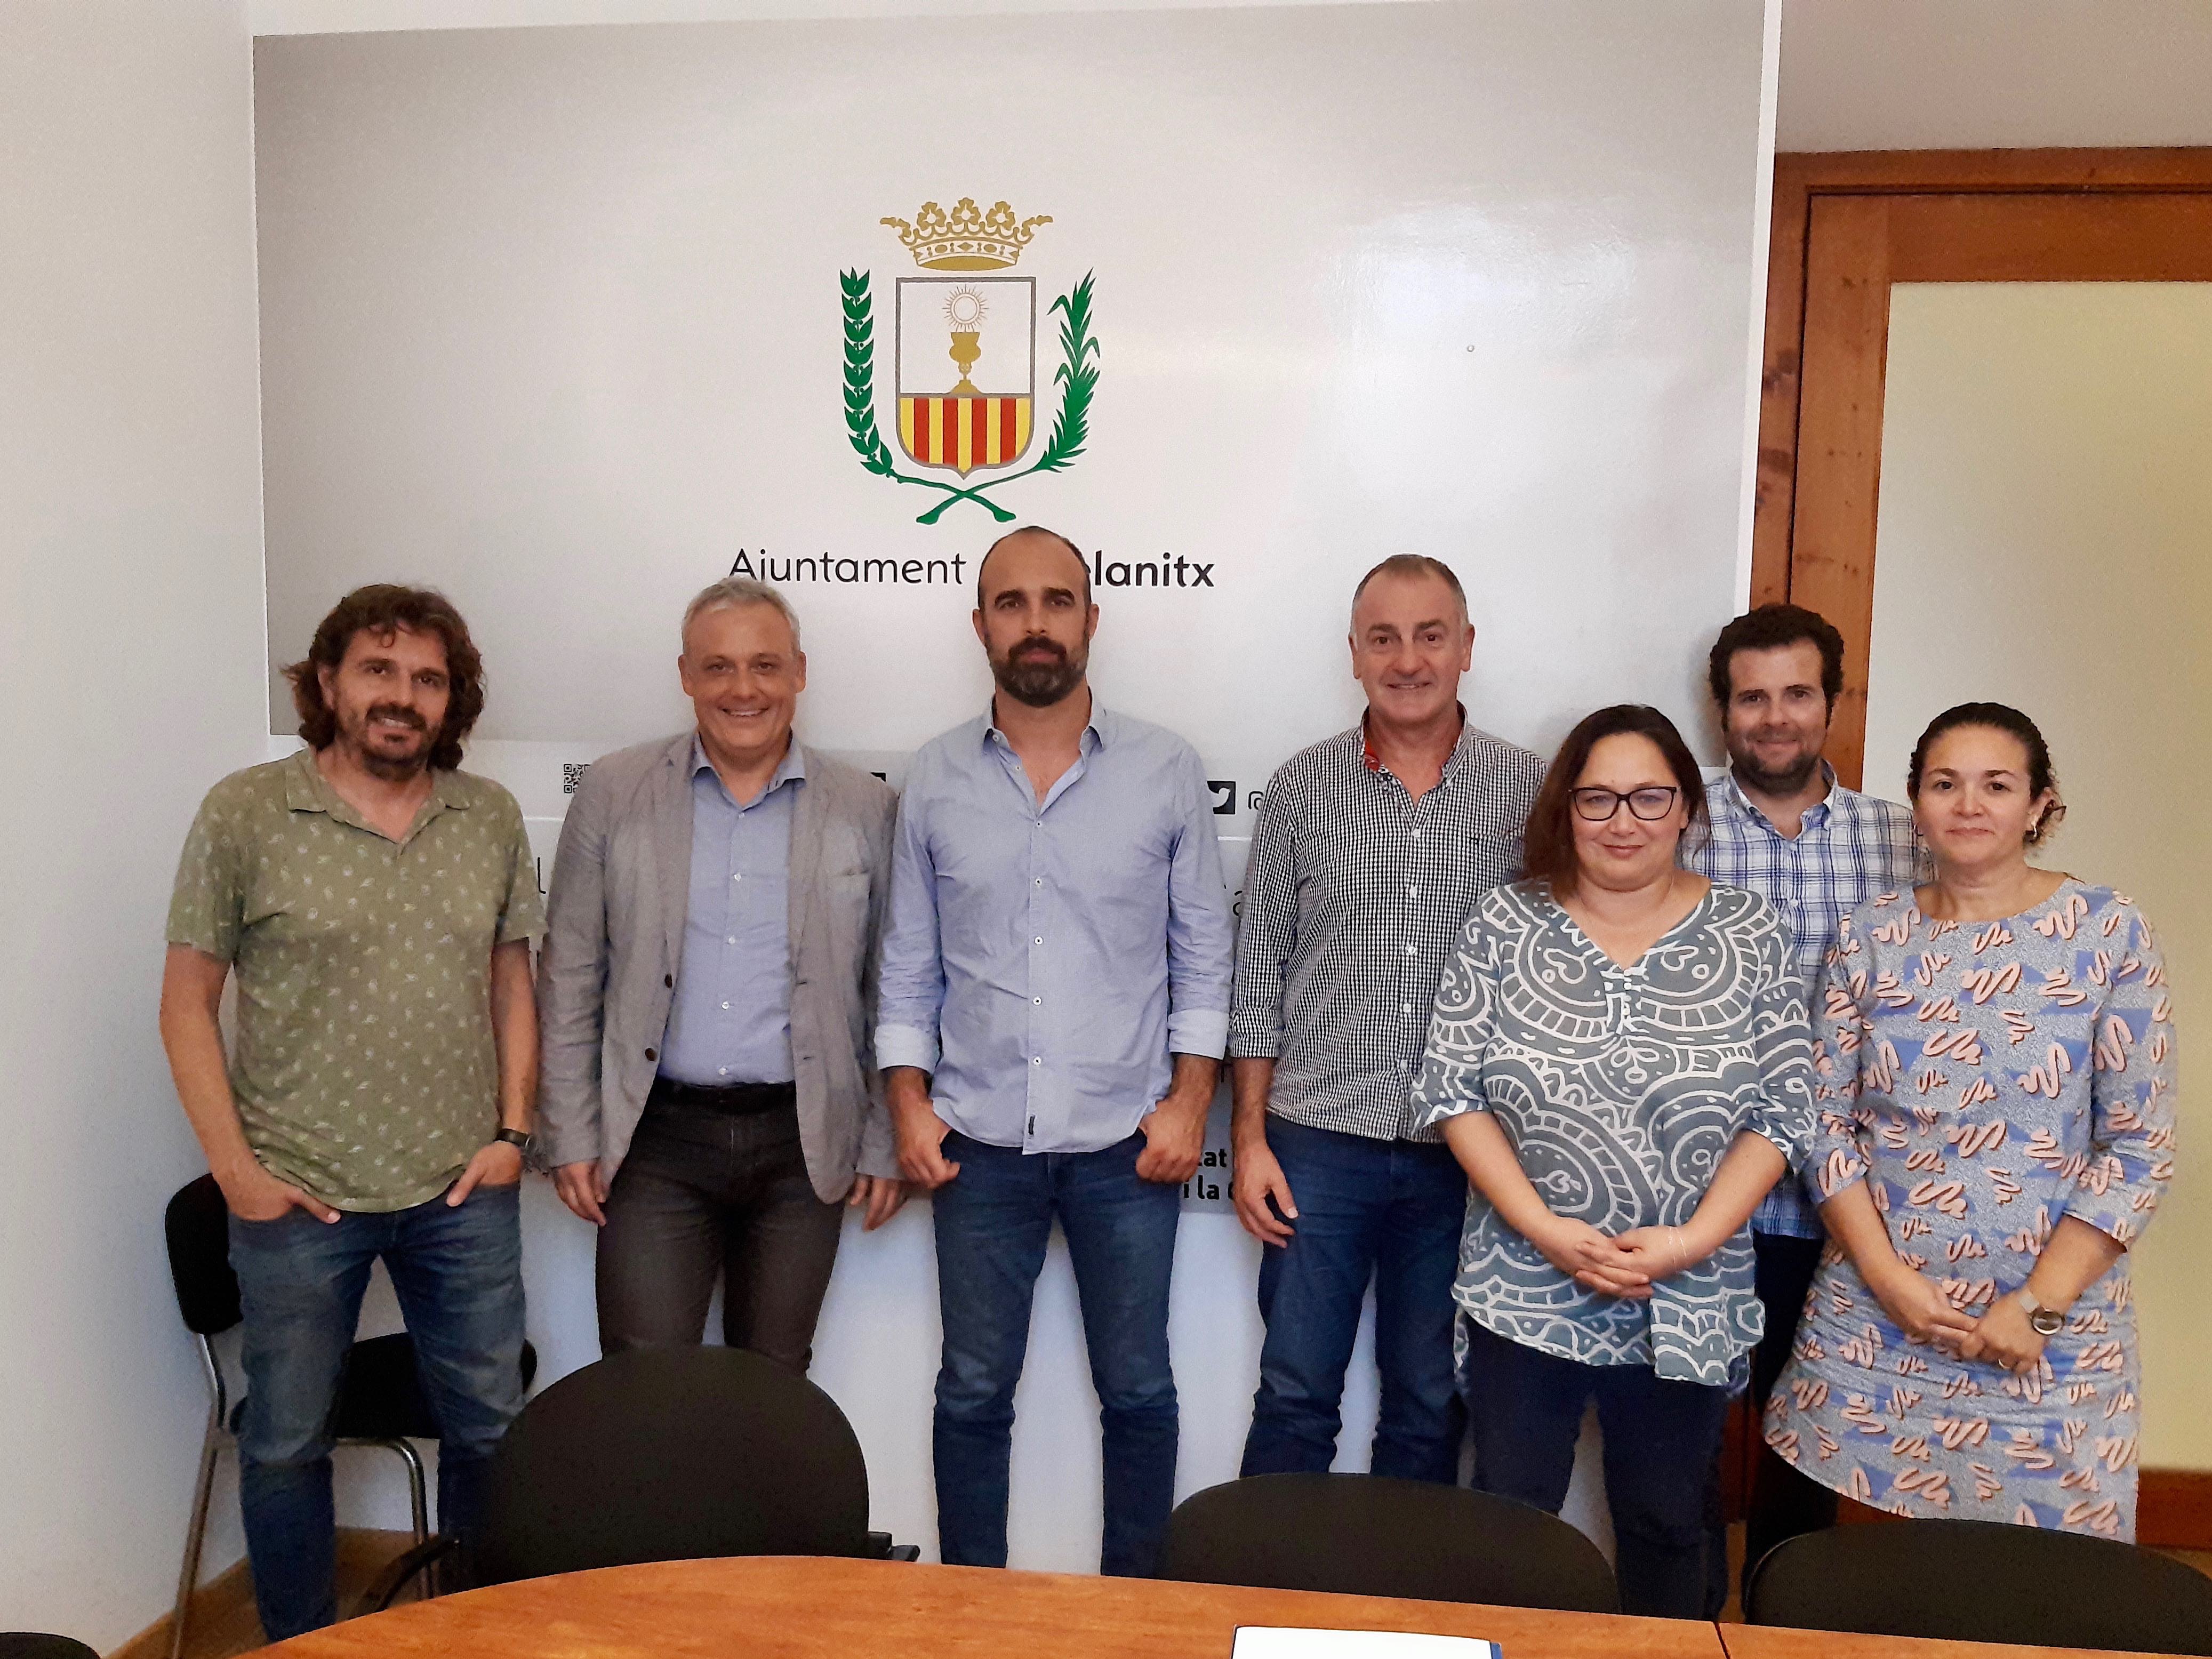 Jaume Alzamora i Jaume Tomàs, del Departament de Promoció Econòmica i Desenvolupament Local, amb representants de l'Ajuntament de Felanitx, encapçalats pel batle Jaume Monserrat.